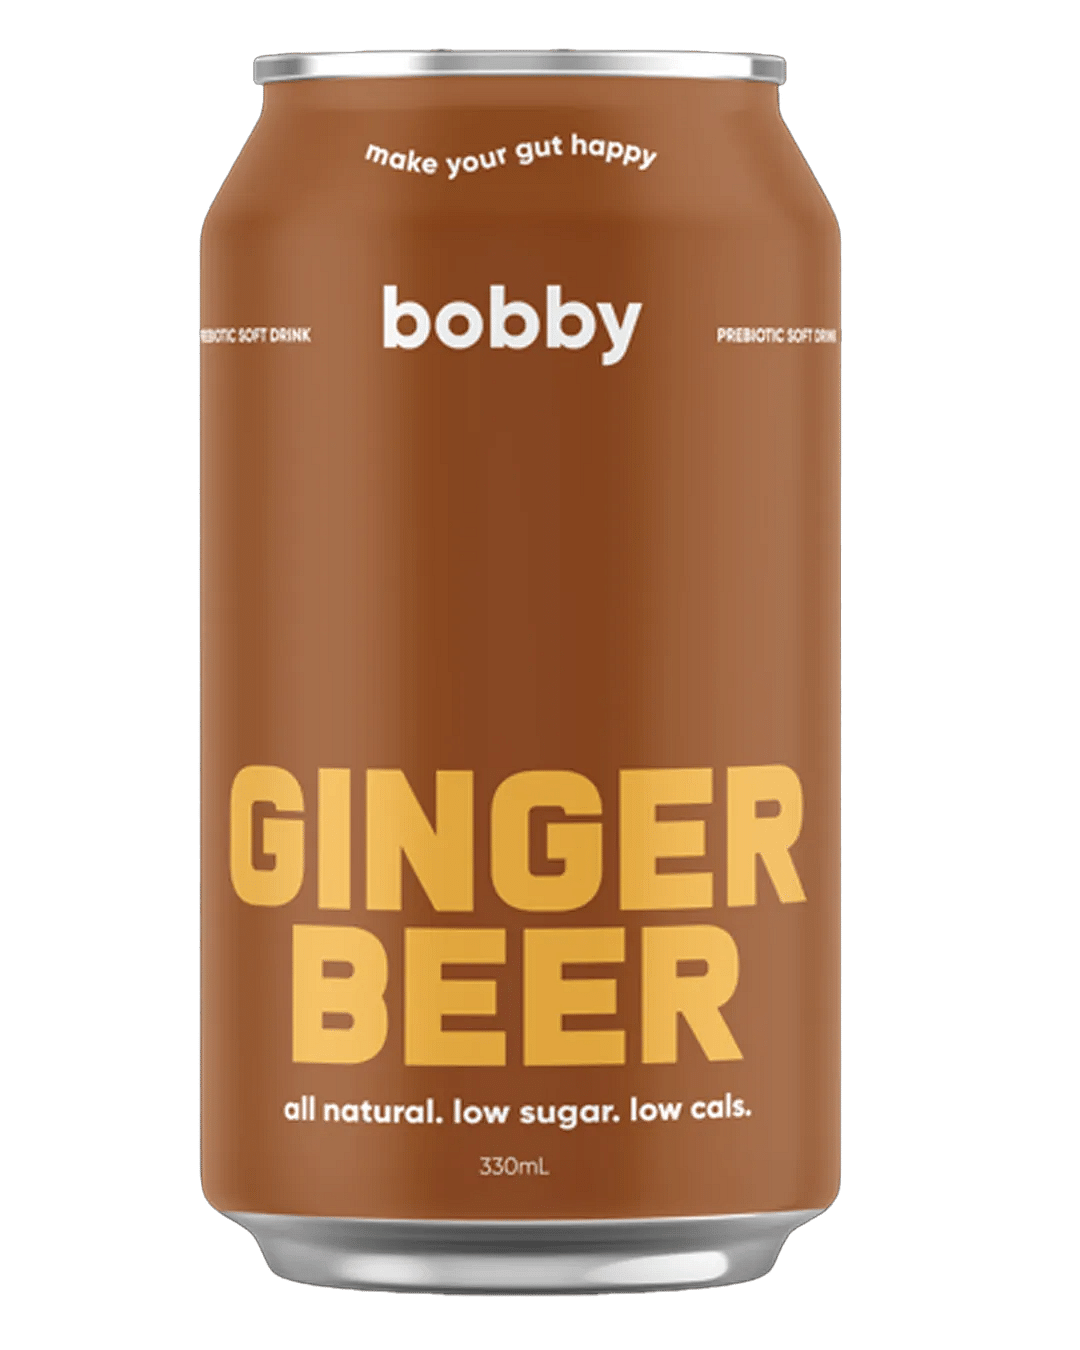 Bobby Ginger Beer (Prebiotic Soft Drink)